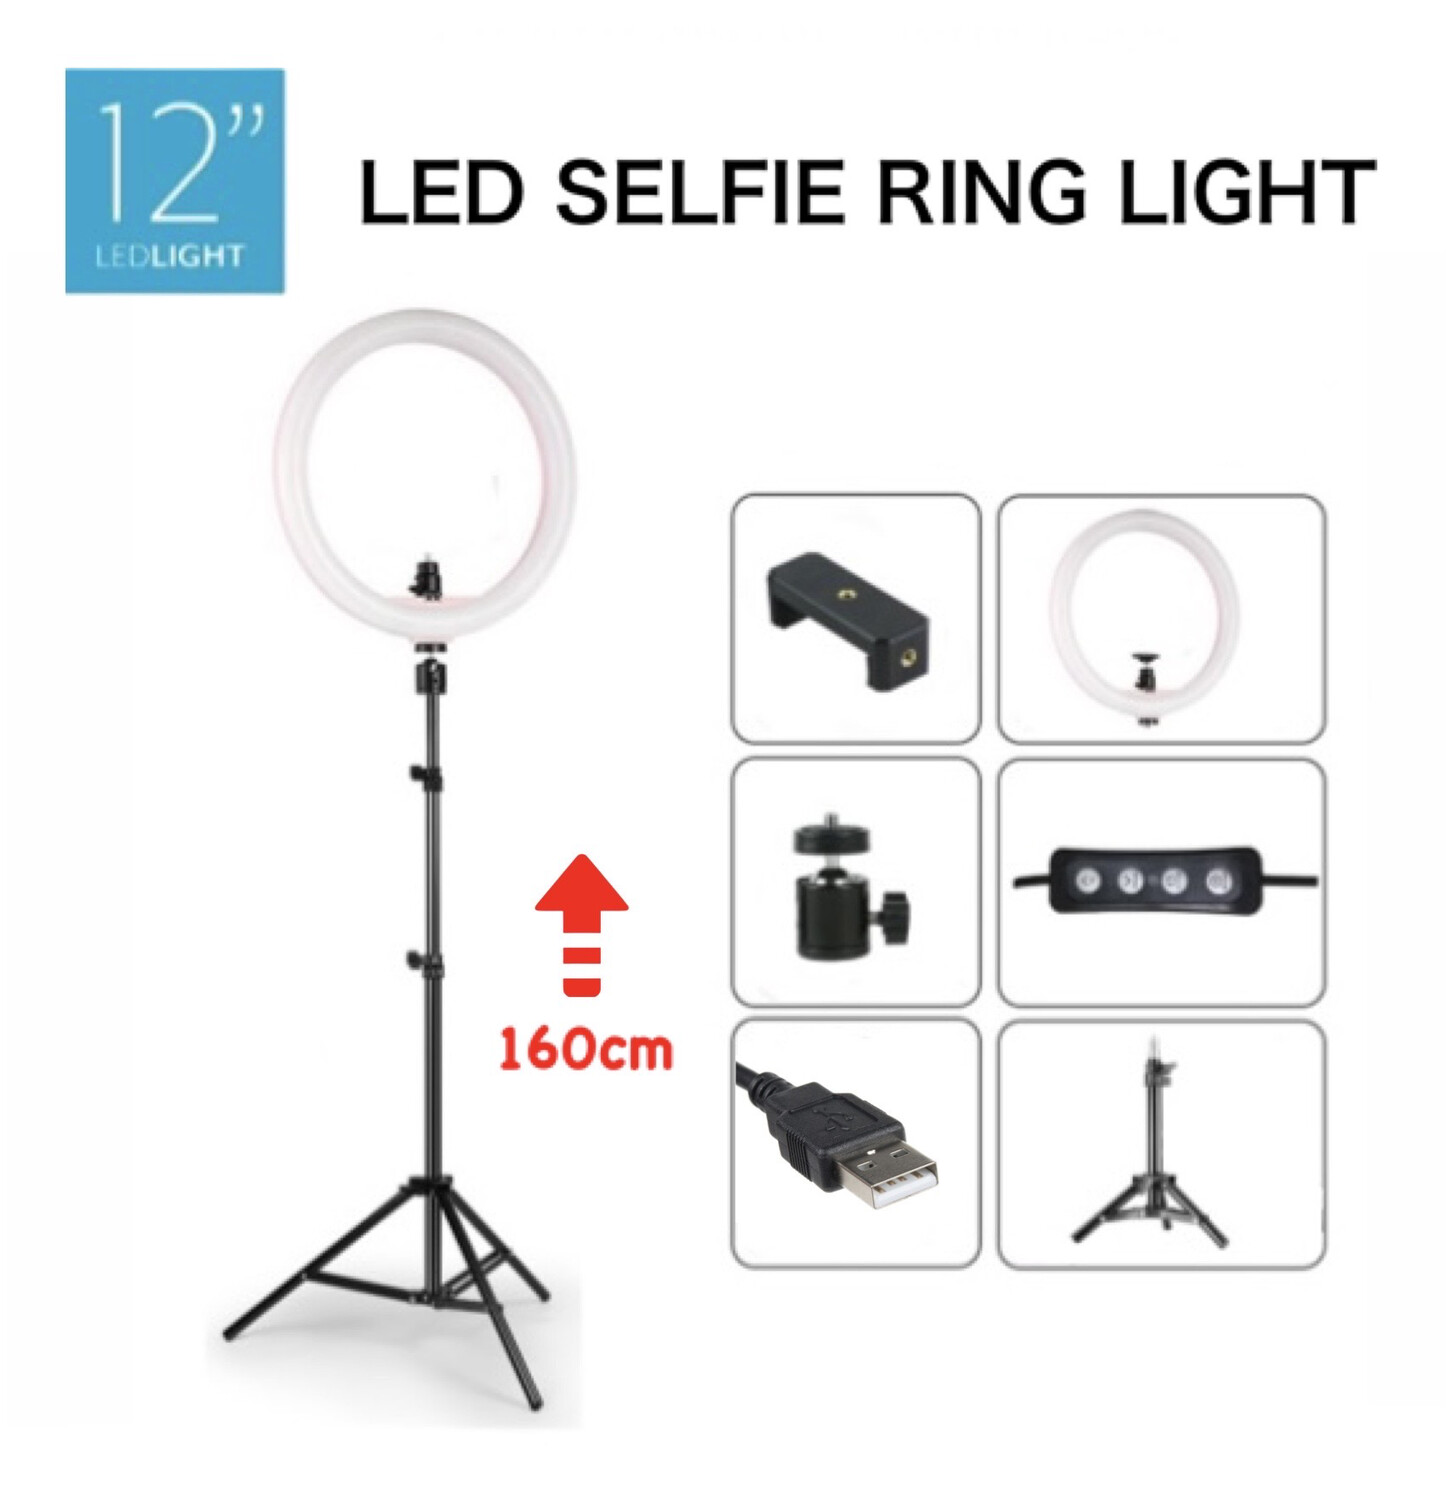 12" 160cm Led Selfie Ring Light